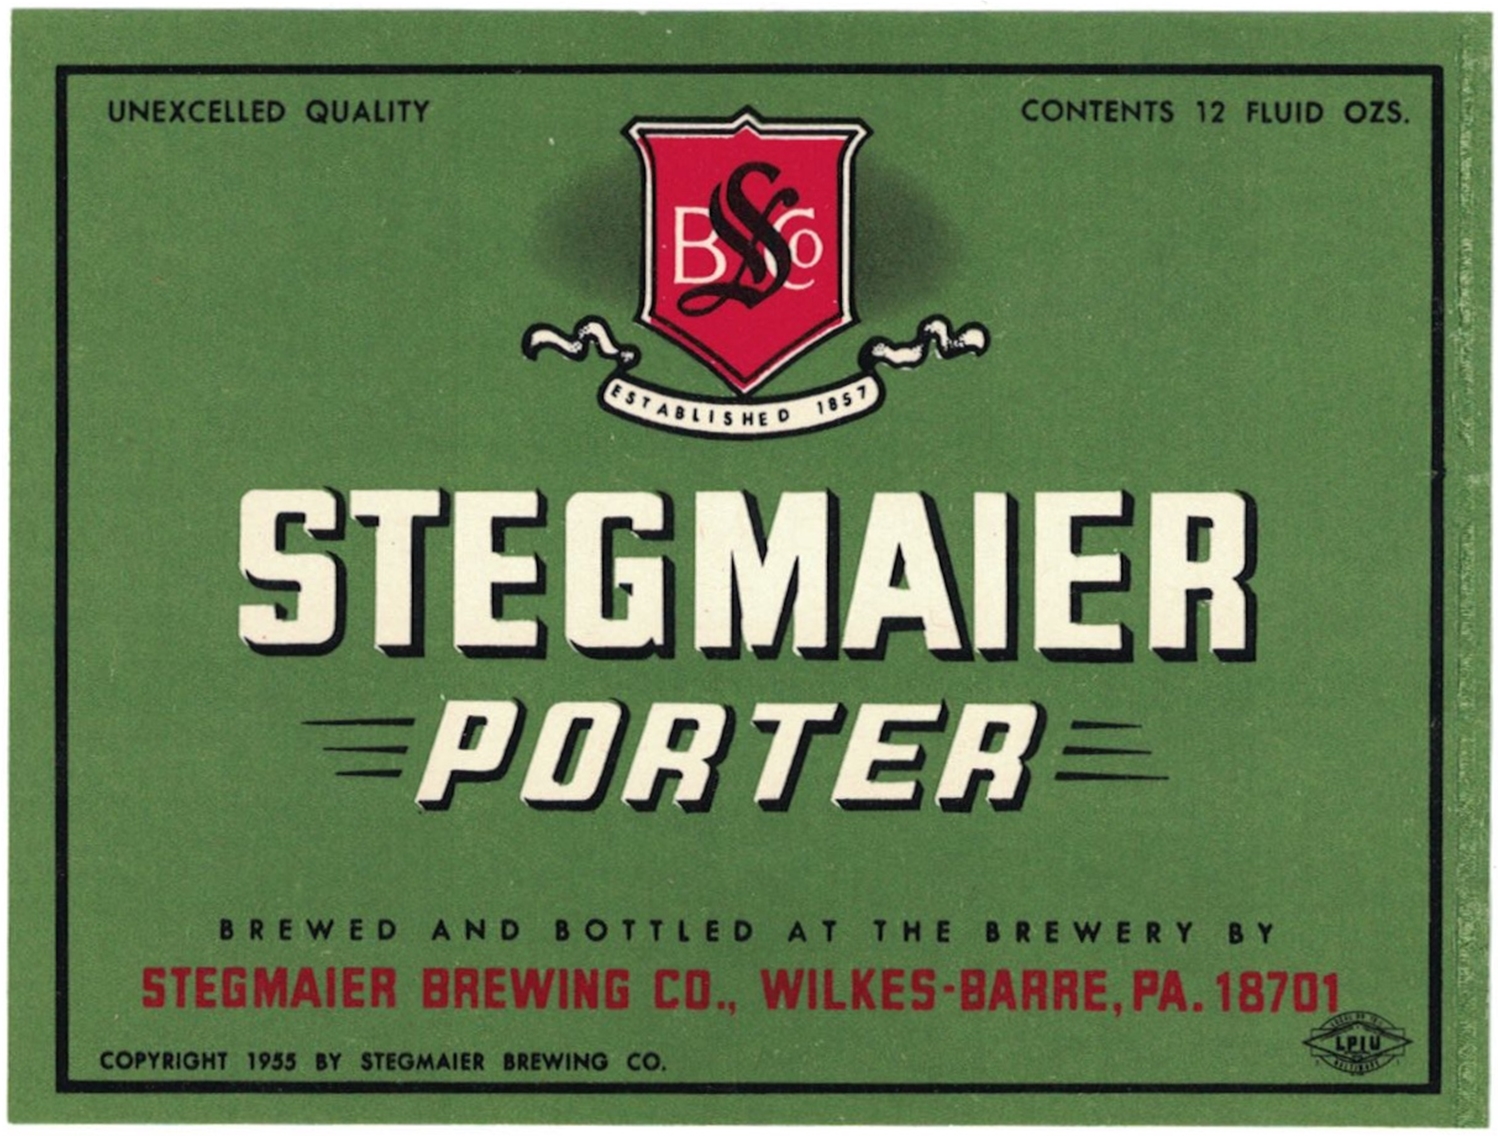 Stegmaier Porter Beer Label